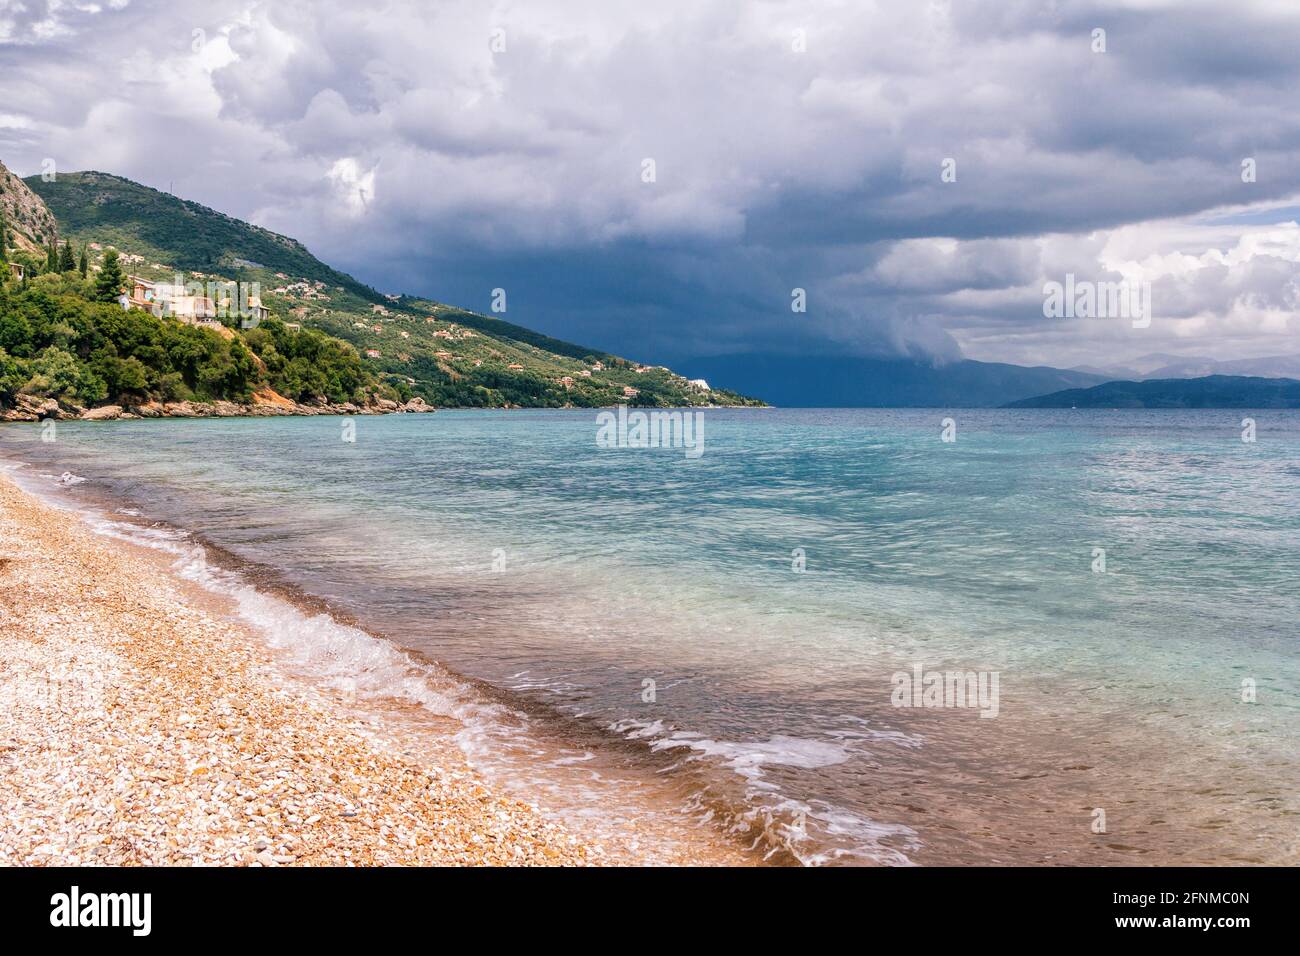 Beau paysage - turquoise couleur eau de mer, sable doré, ciel gris avec nuages sombres de tempête et montagnes à l'horizon. Banque D'Images